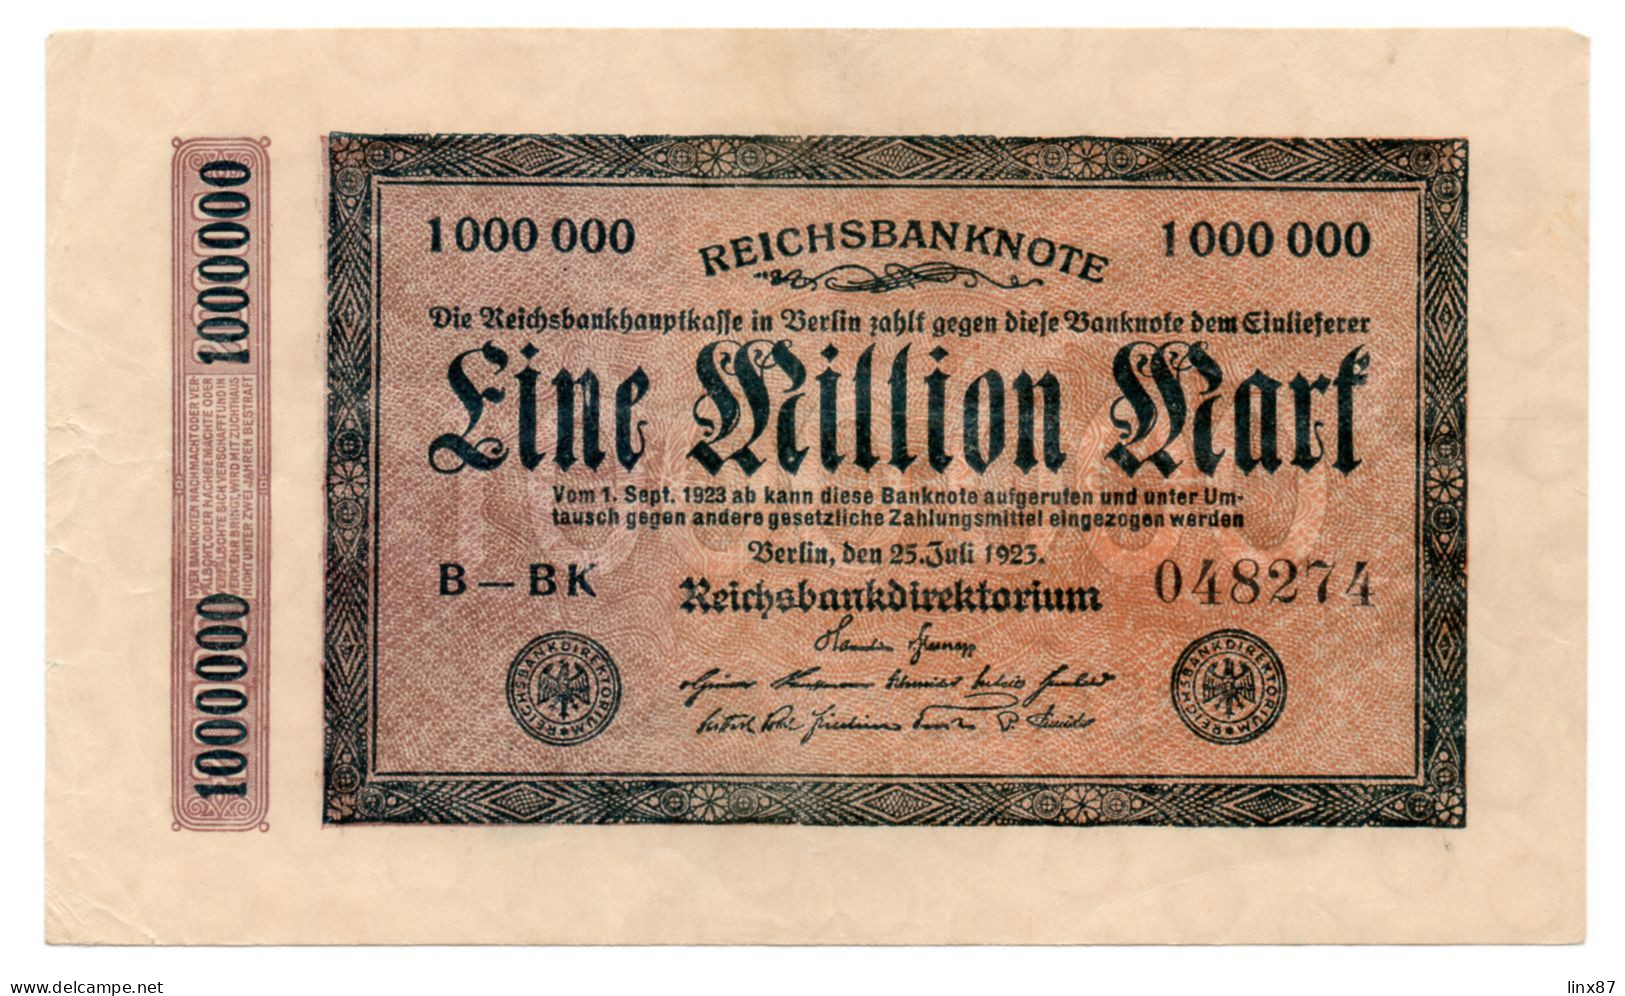 "Reichsbanknote" collezione di n. 47 banconote germania 1910-1923.